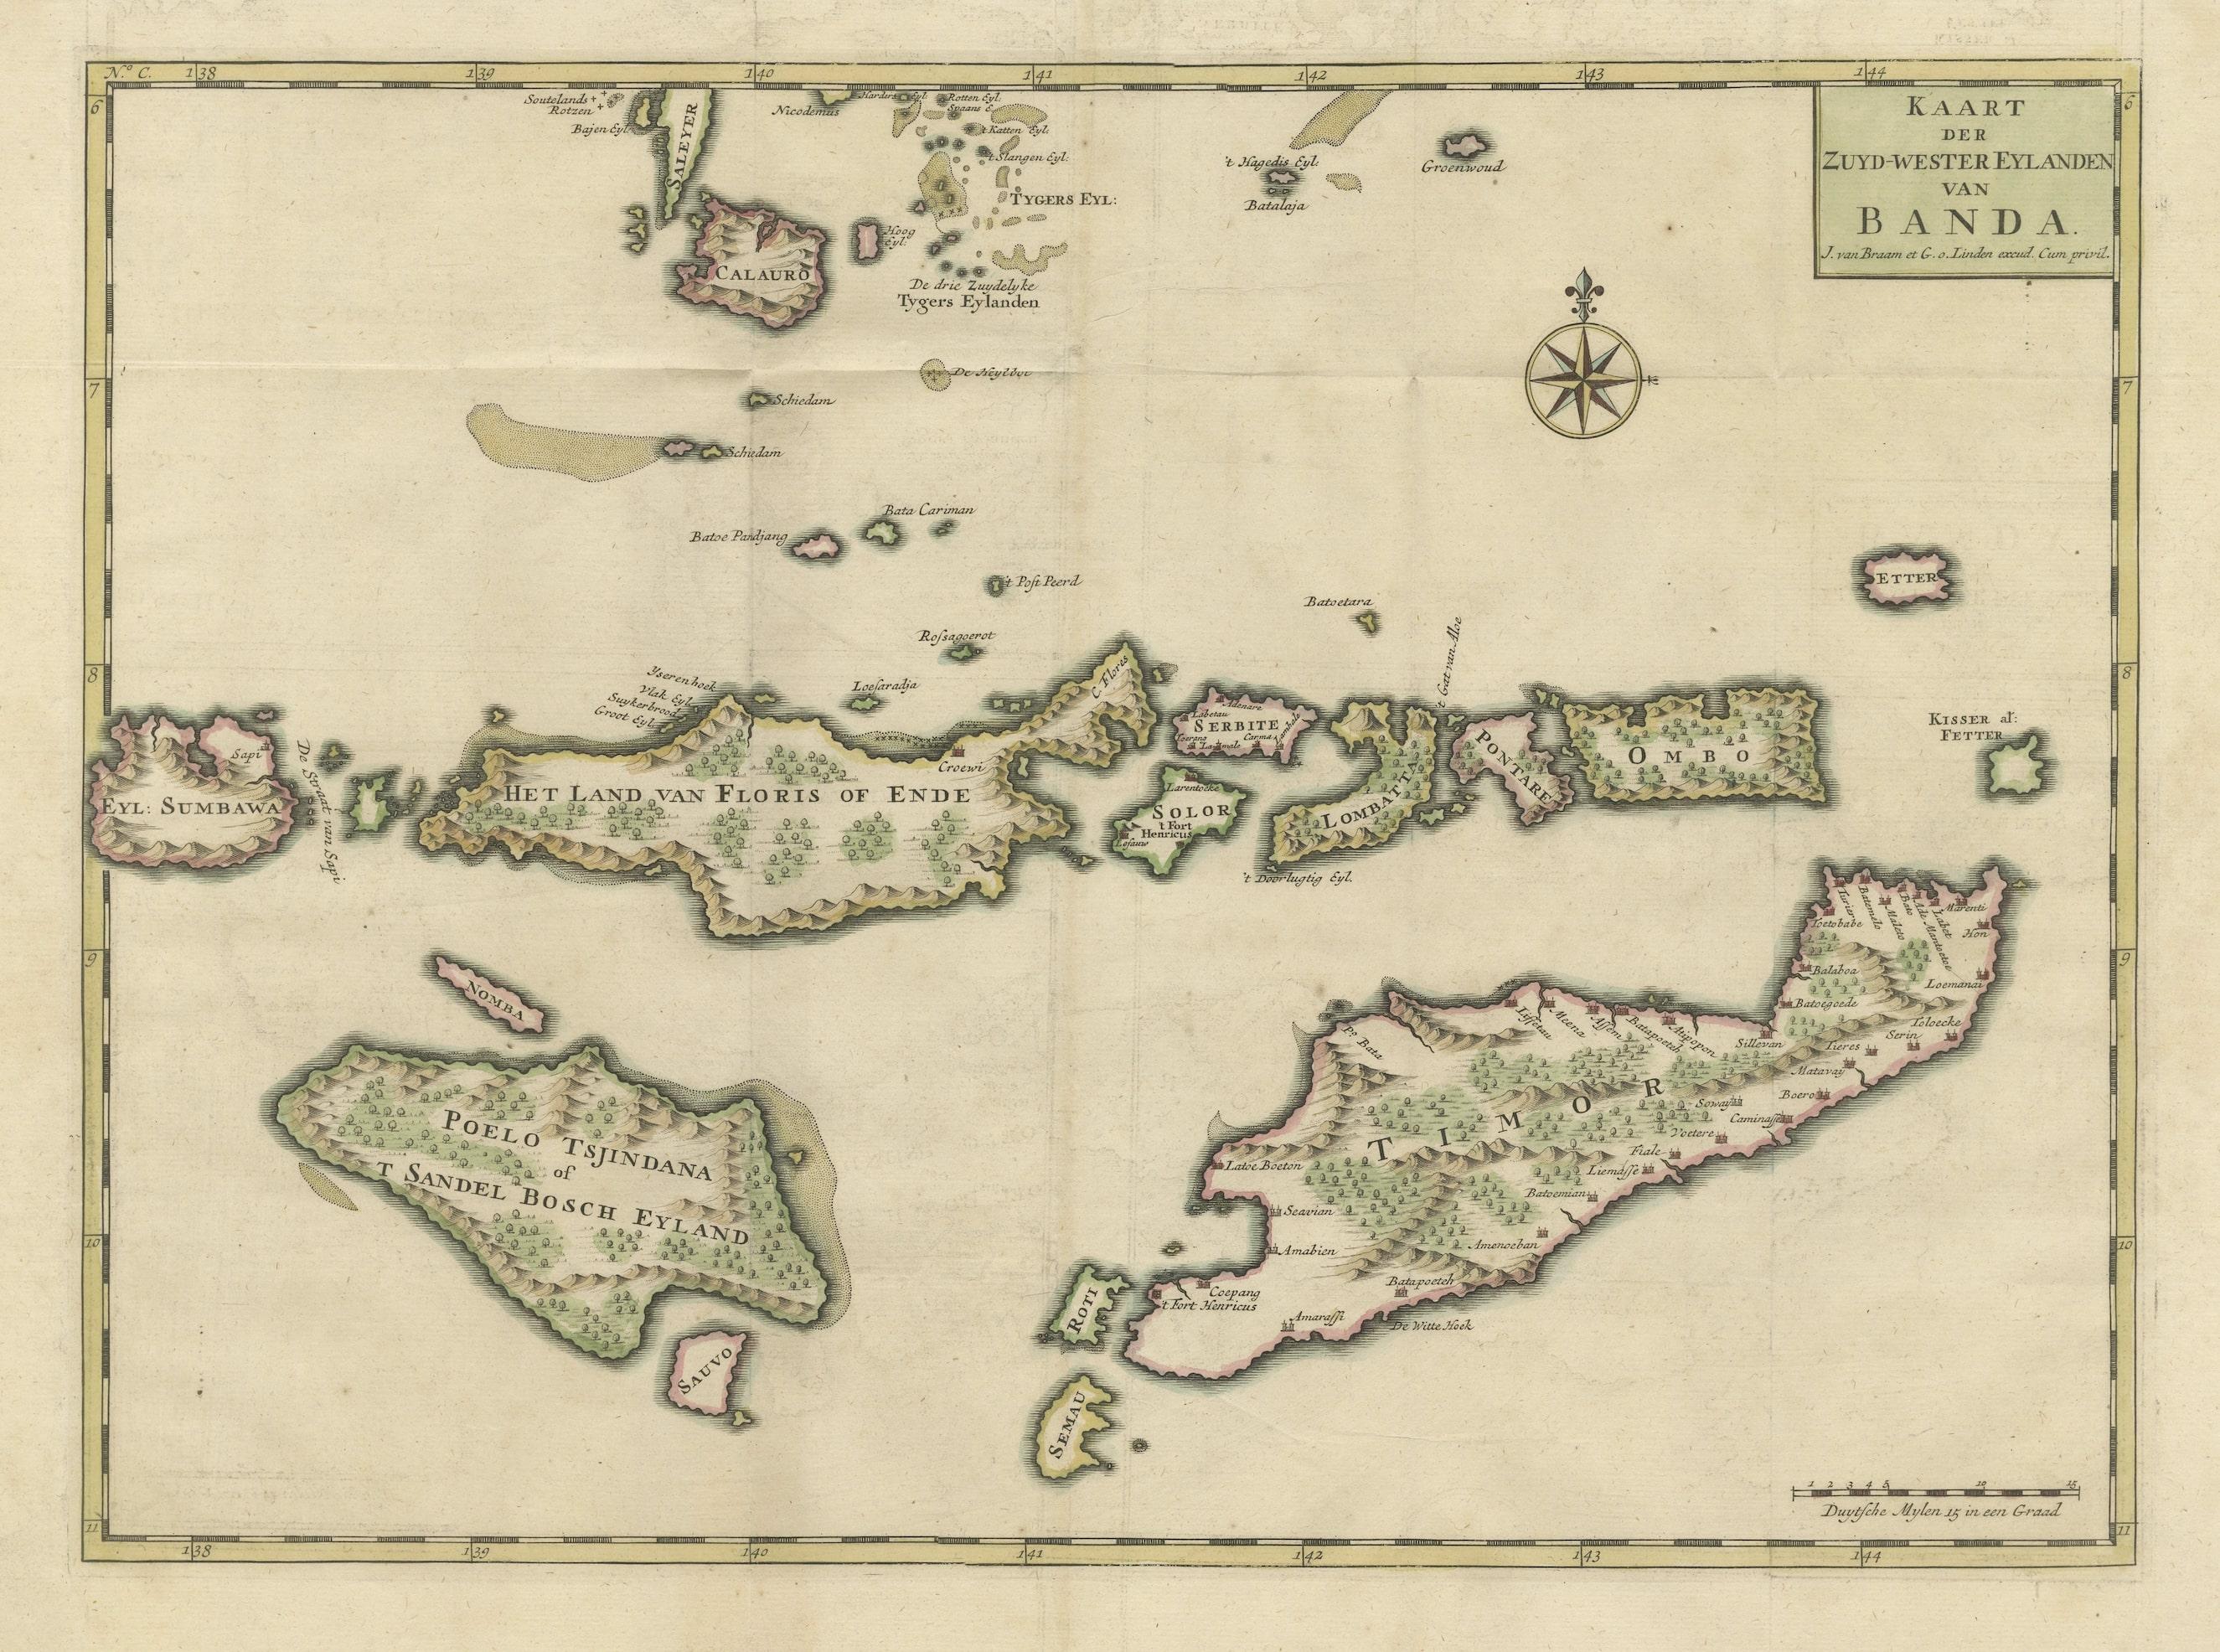 Antike Originalkarte mit dem Titel 'Kaart der Zuyd-Wester Eylanden van Banda'. Eine faszinierende Karte der Inseln im südwestlichen Teil der Banda-See einschließlich Sumba, Flores und Timor. Veröffentlicht 1724-1726 von Joannes van Braam und Gerard